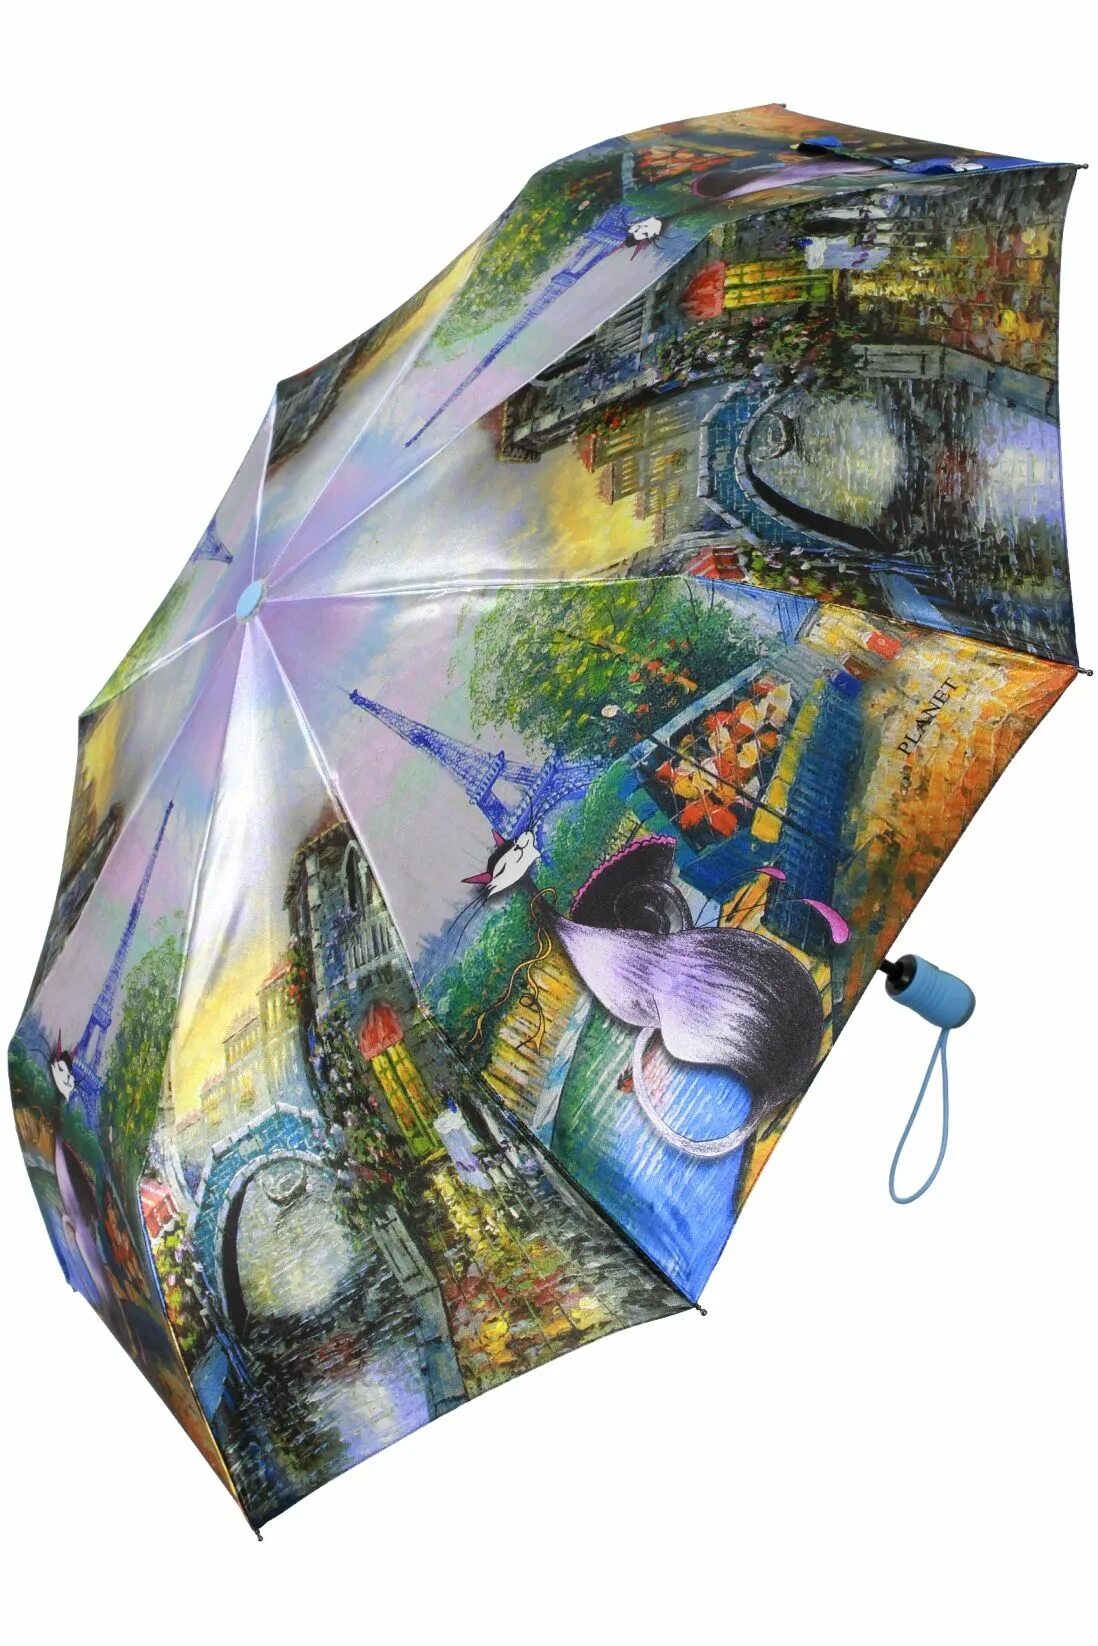 Зонт автомат антиветер женский Planet. Зонт Zest с кошками. Оригинальные зонты женские. Красивый зонт. Озон зонты женские автоматы